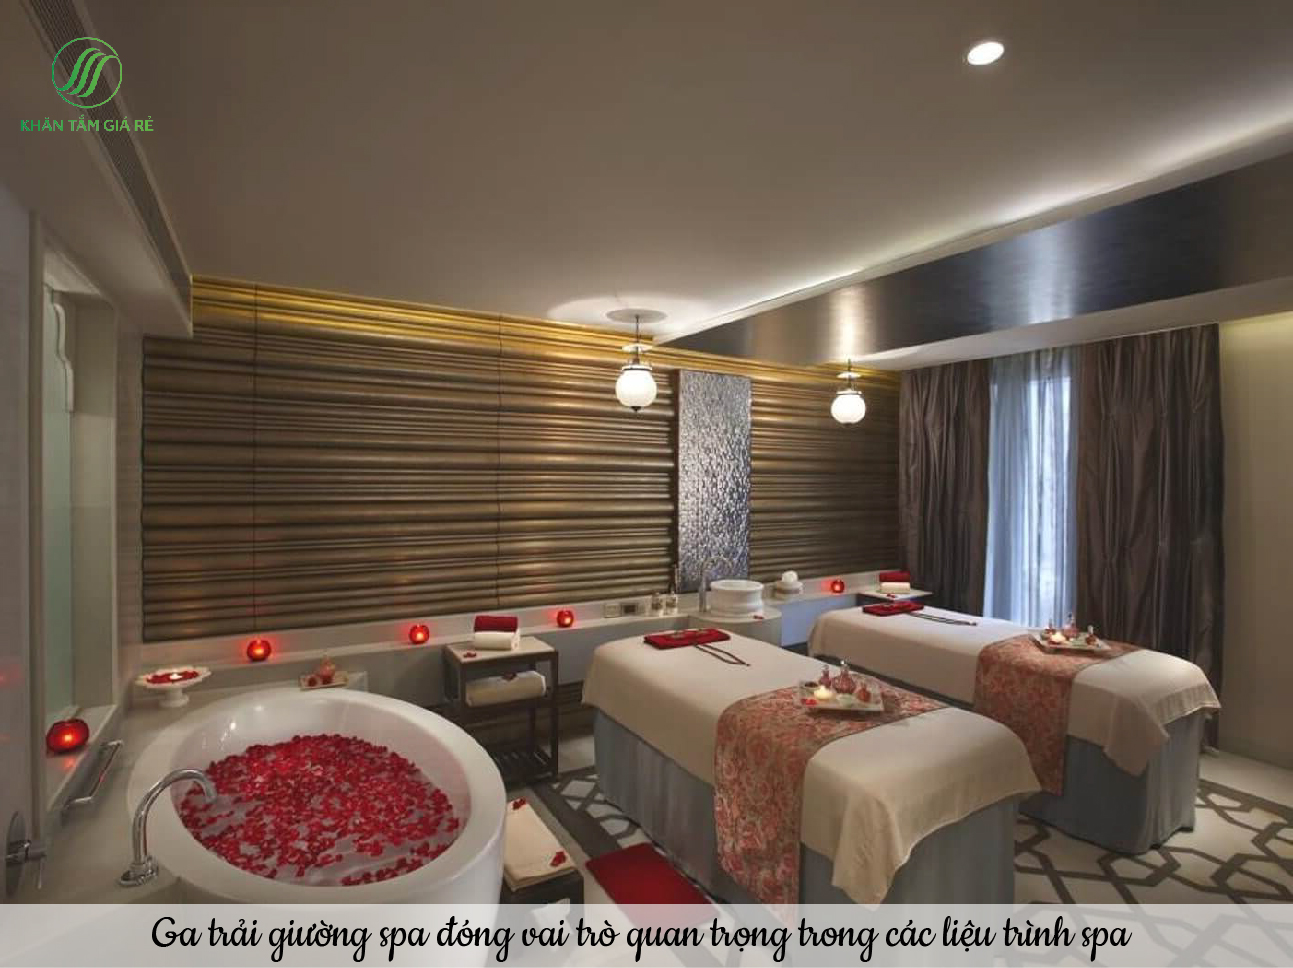 Ga trải giường spa giúp nâng cao thẩm mỹ, chất lượng dịch vụ cho spa